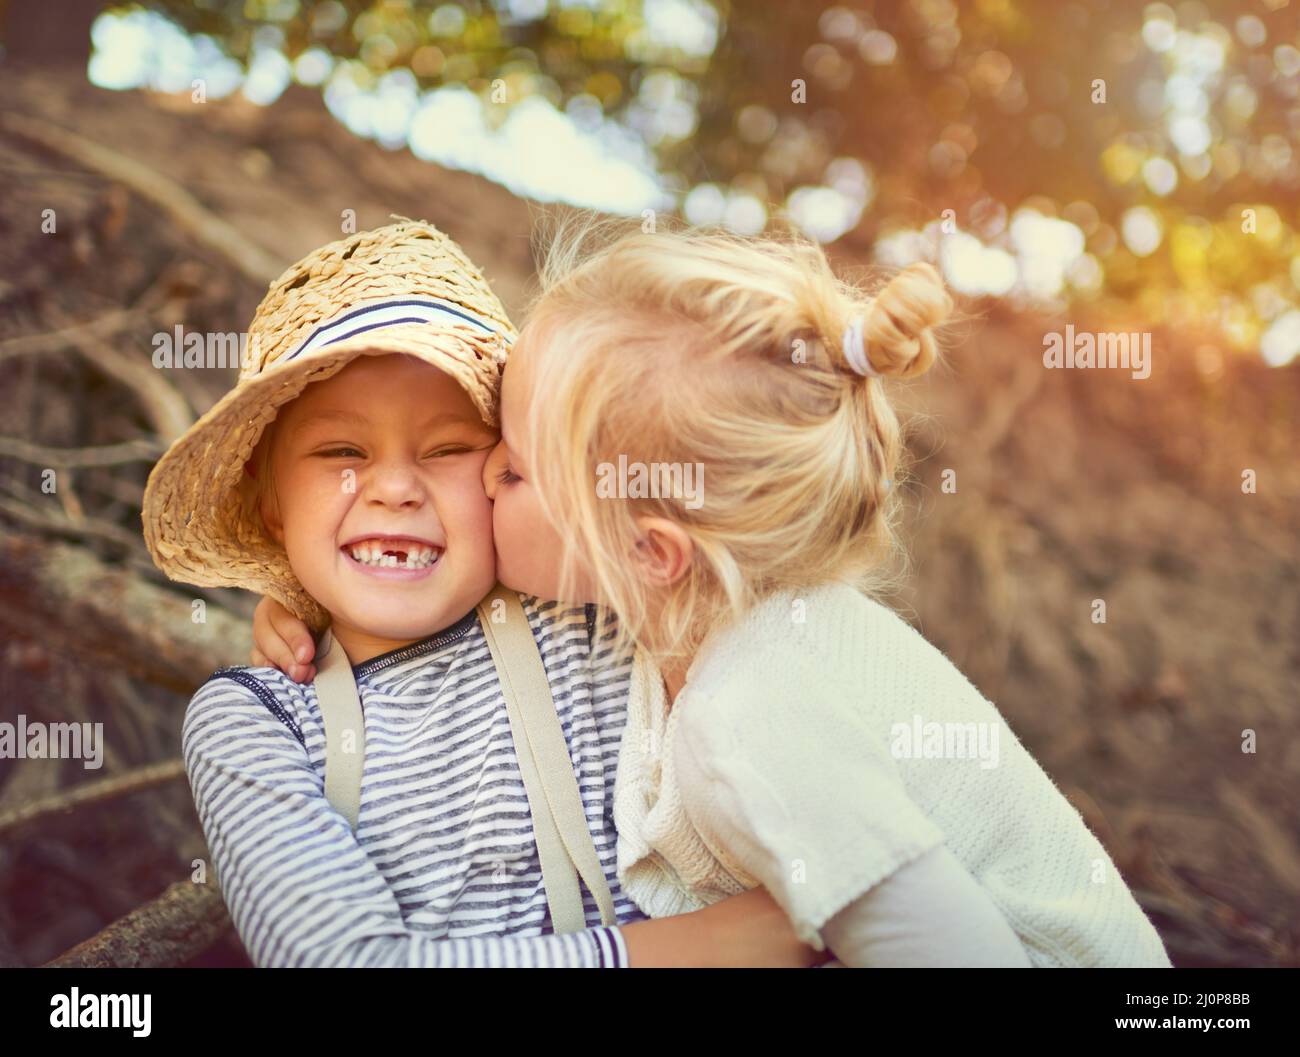 El vínculo entre hermanos es irrompible. Foto de dos niños pequeños jugando juntos al aire libre. Foto de stock